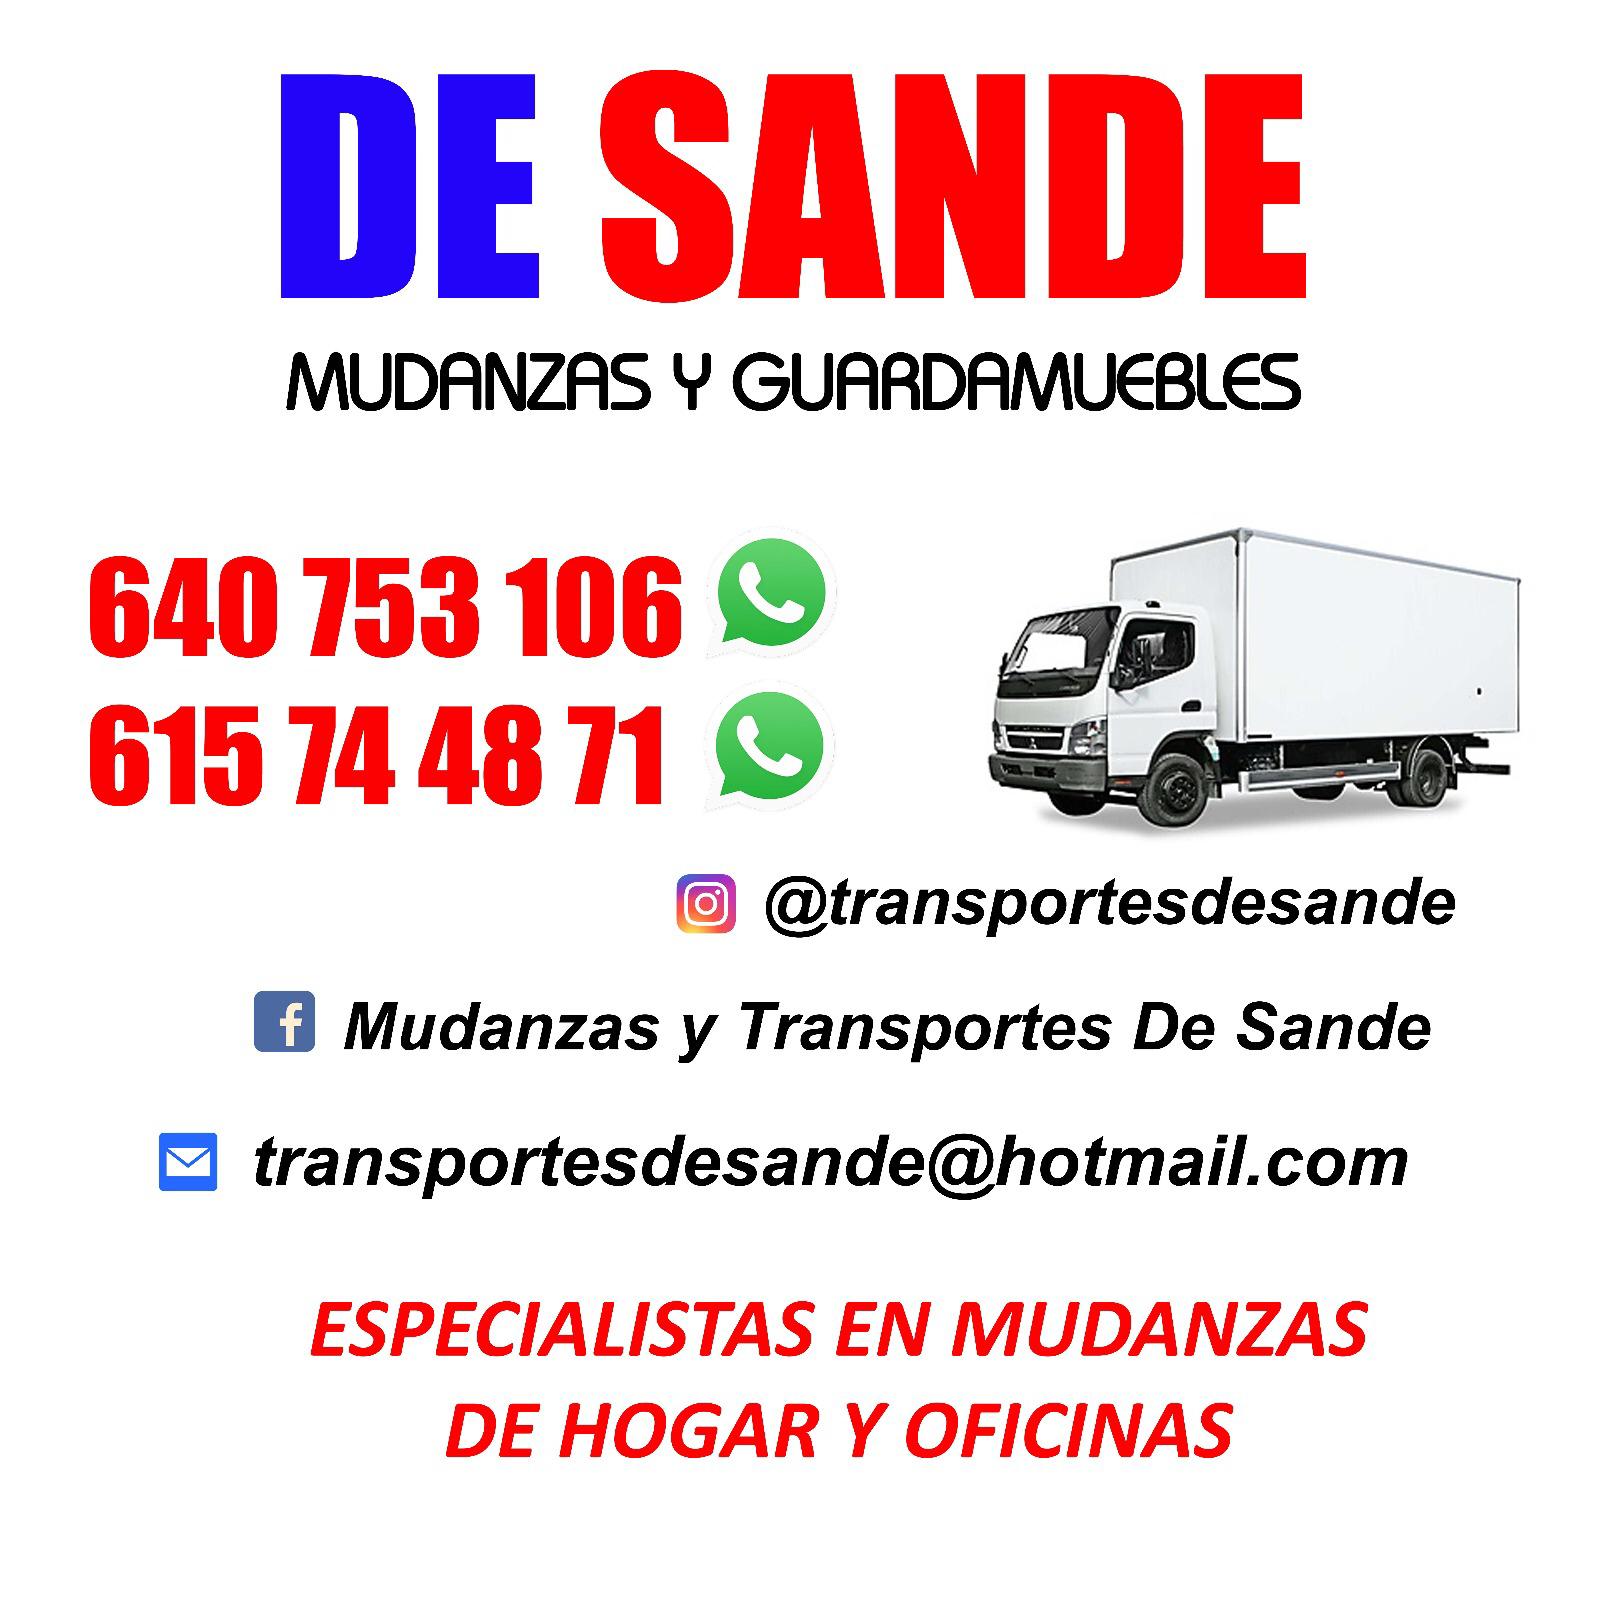 Images Mudanzas y Transportes De Sande